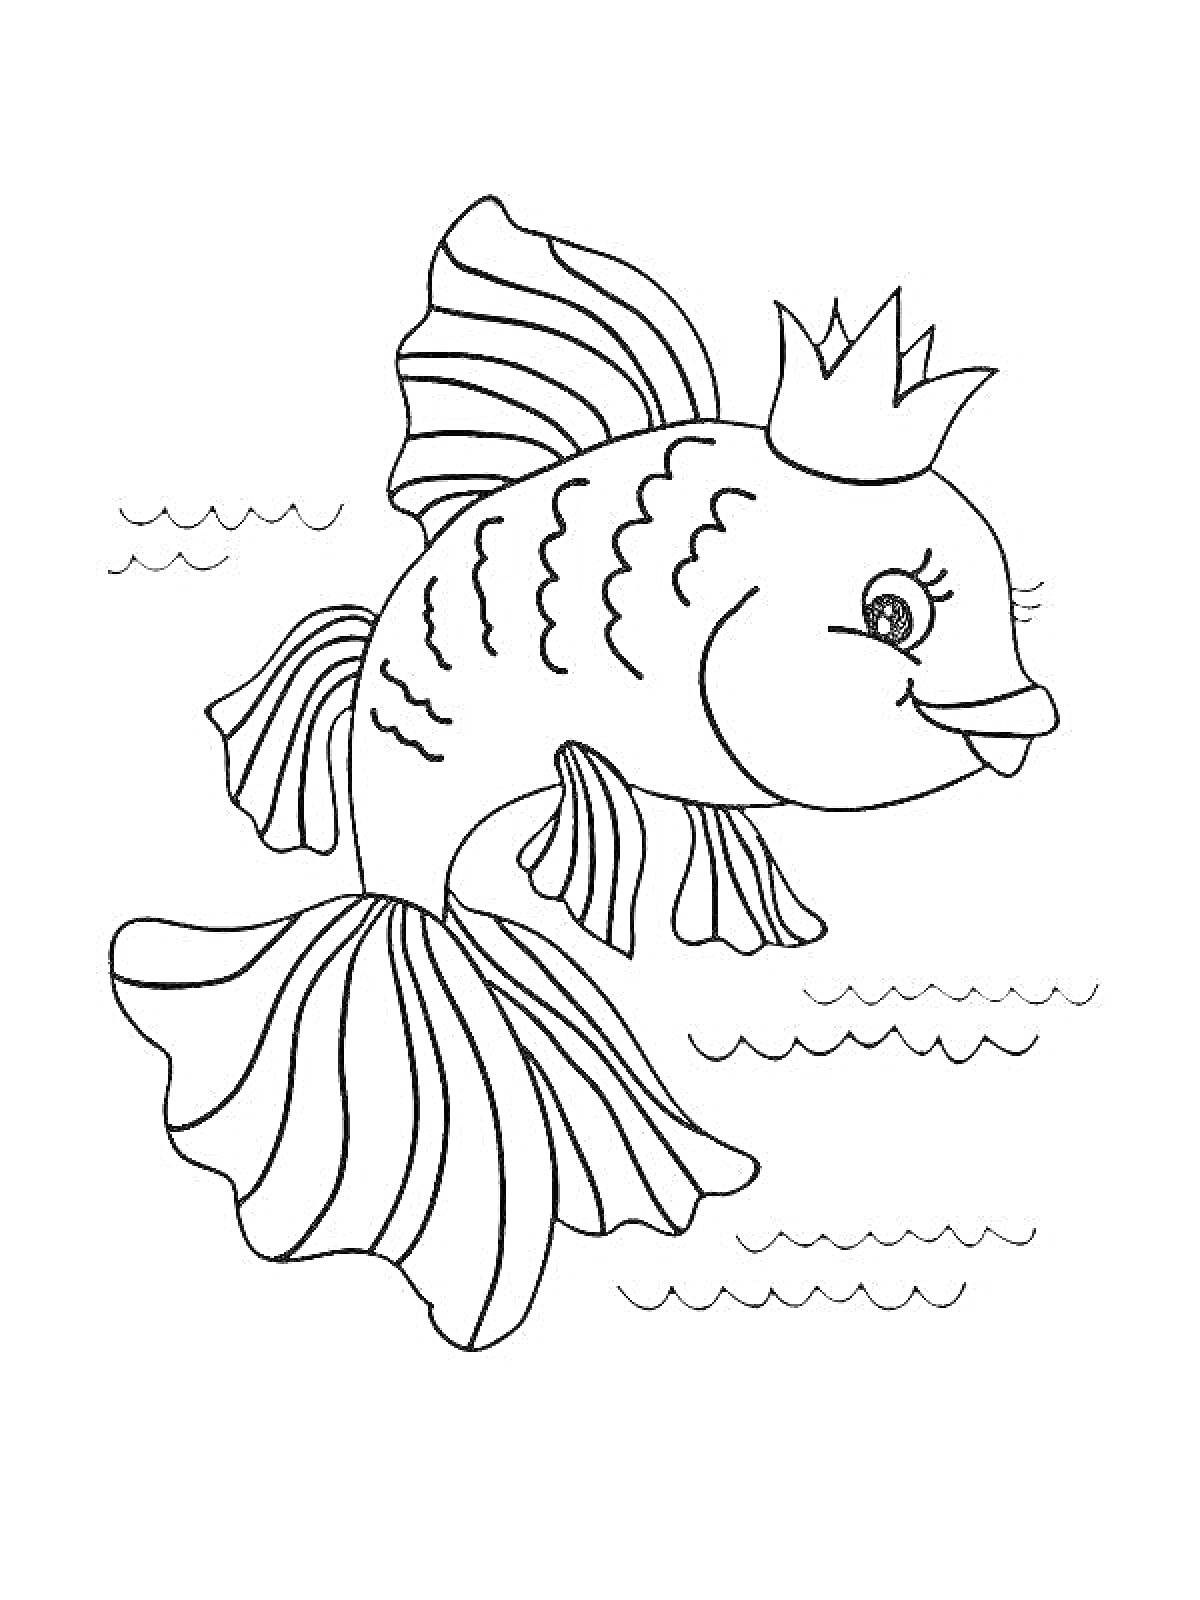 Раскраска Золотая рыбка с короной на плавниках в воде